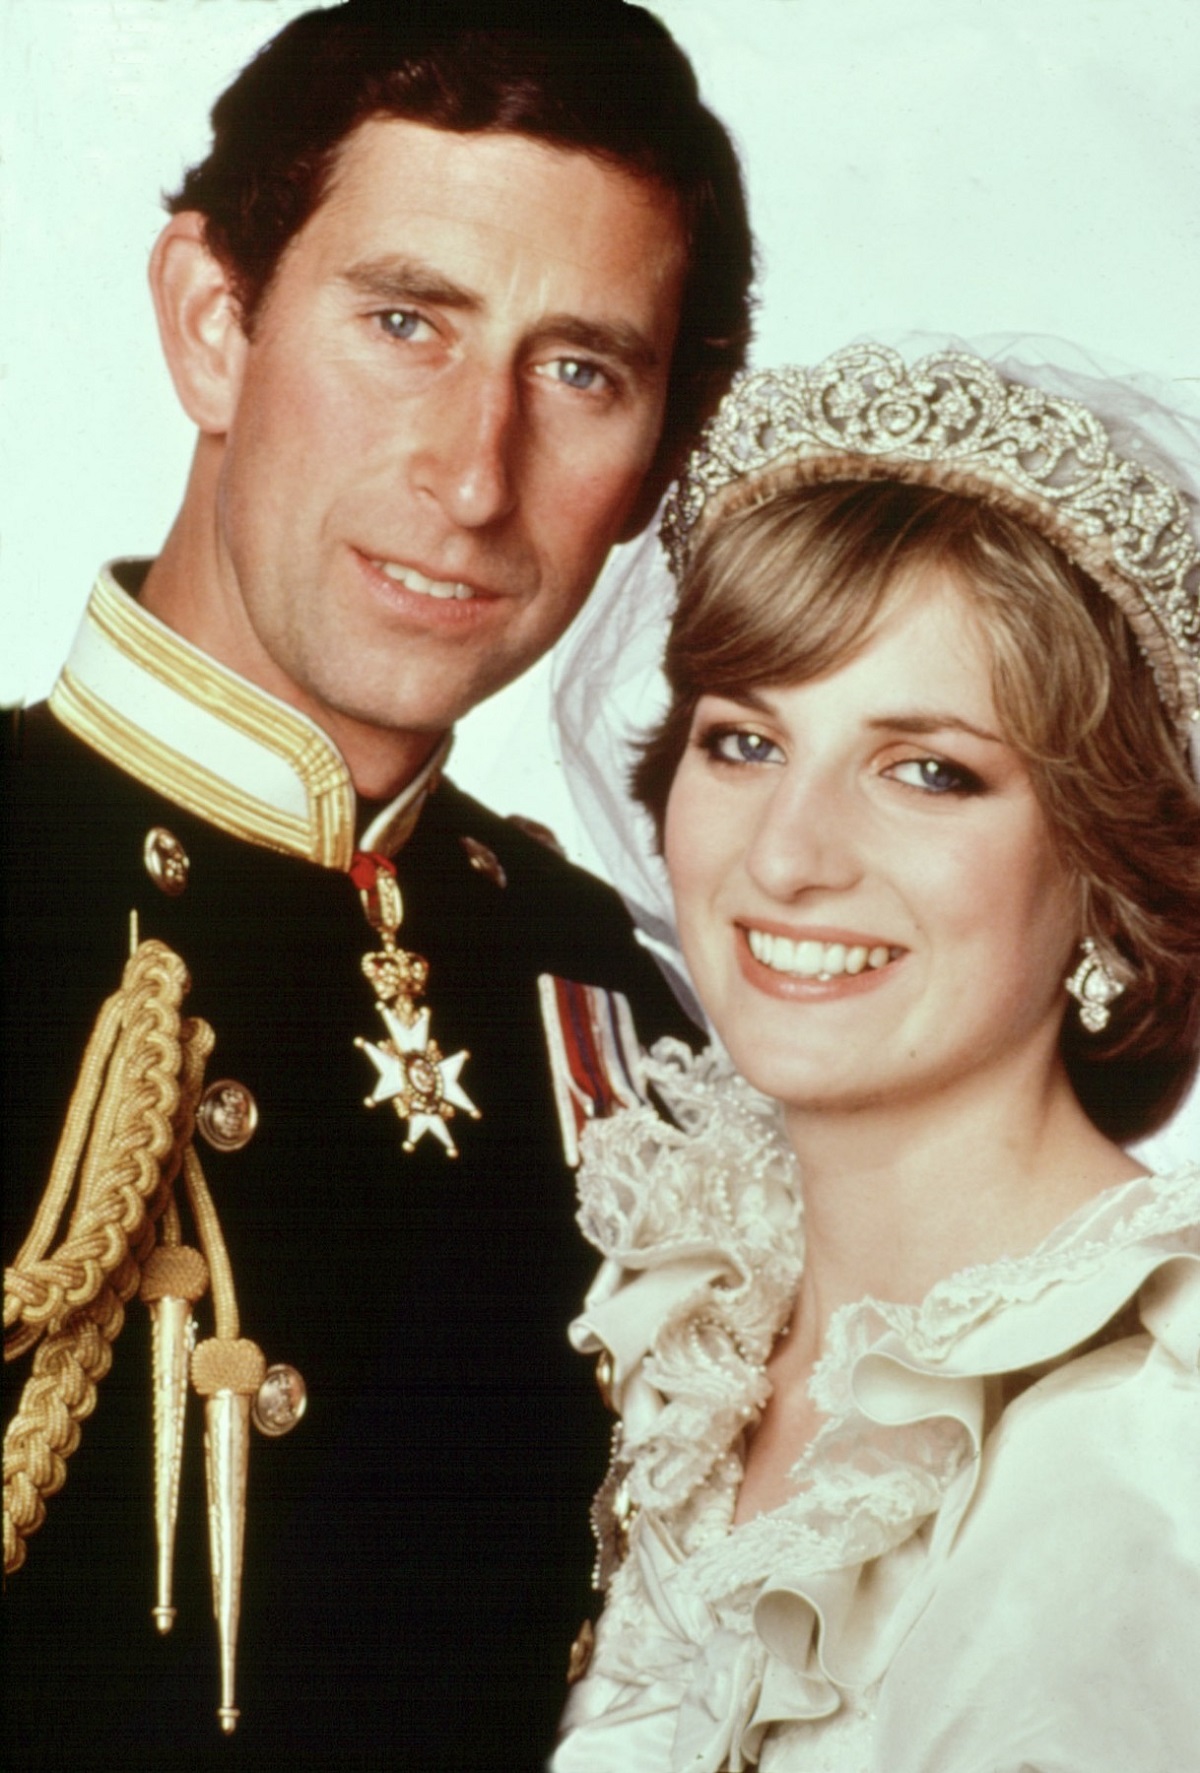 Portret cu Prințu Charles în uniformă militară care zâmbește, alături de soția sa, Prinșesa Diana care poartă rochie de mireasă la nunta lor din iulie 1981